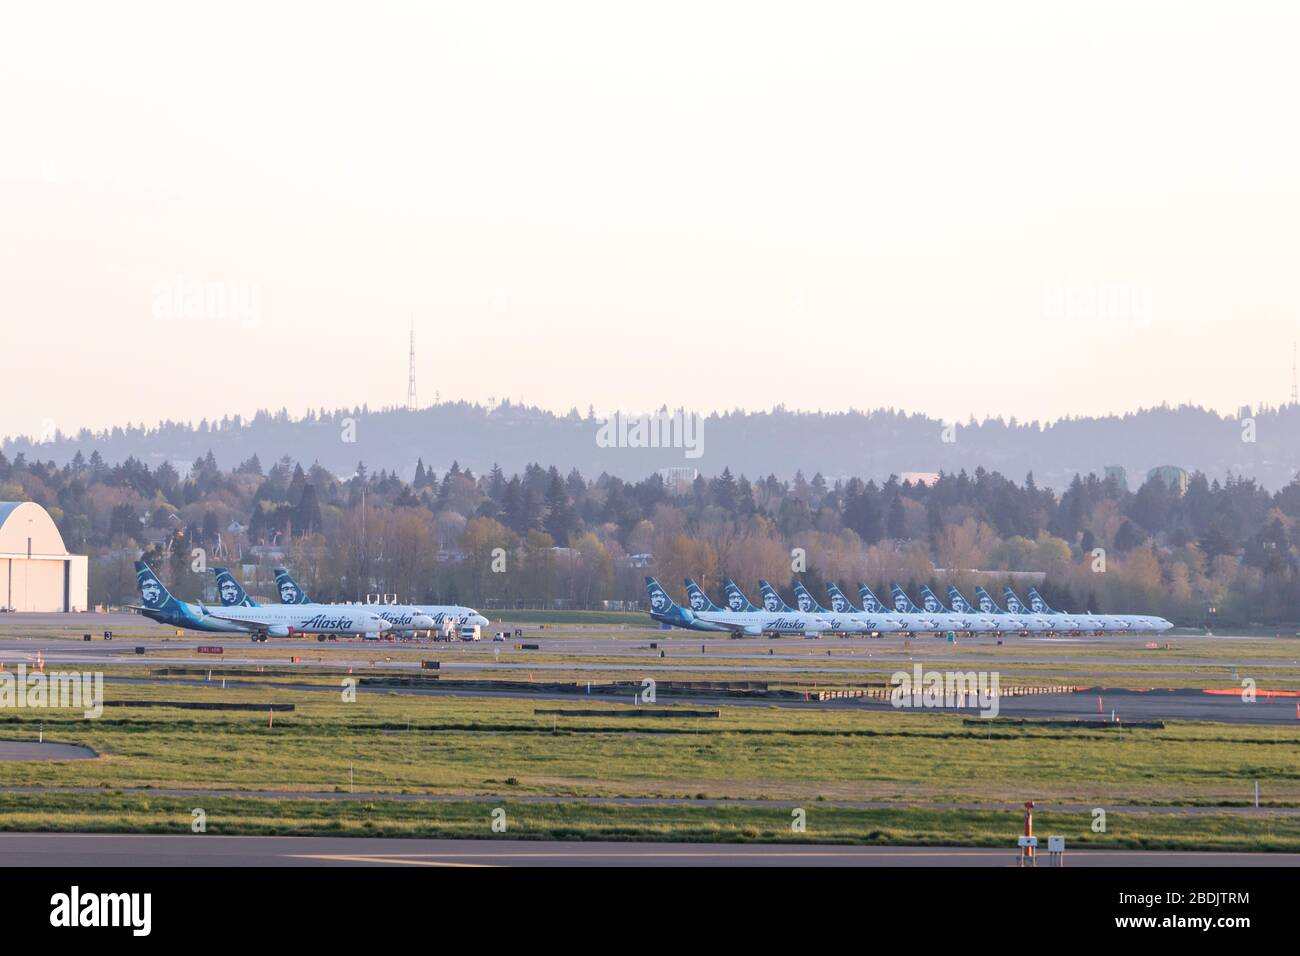 PORTLAND, OR / EE.UU. - 7 de abril de 2020: Aviones de Alaska Airlines con conexión a tierra en el aeropuerto internacional de Portland debido a la pandemia de coronavirus y signi Foto de stock